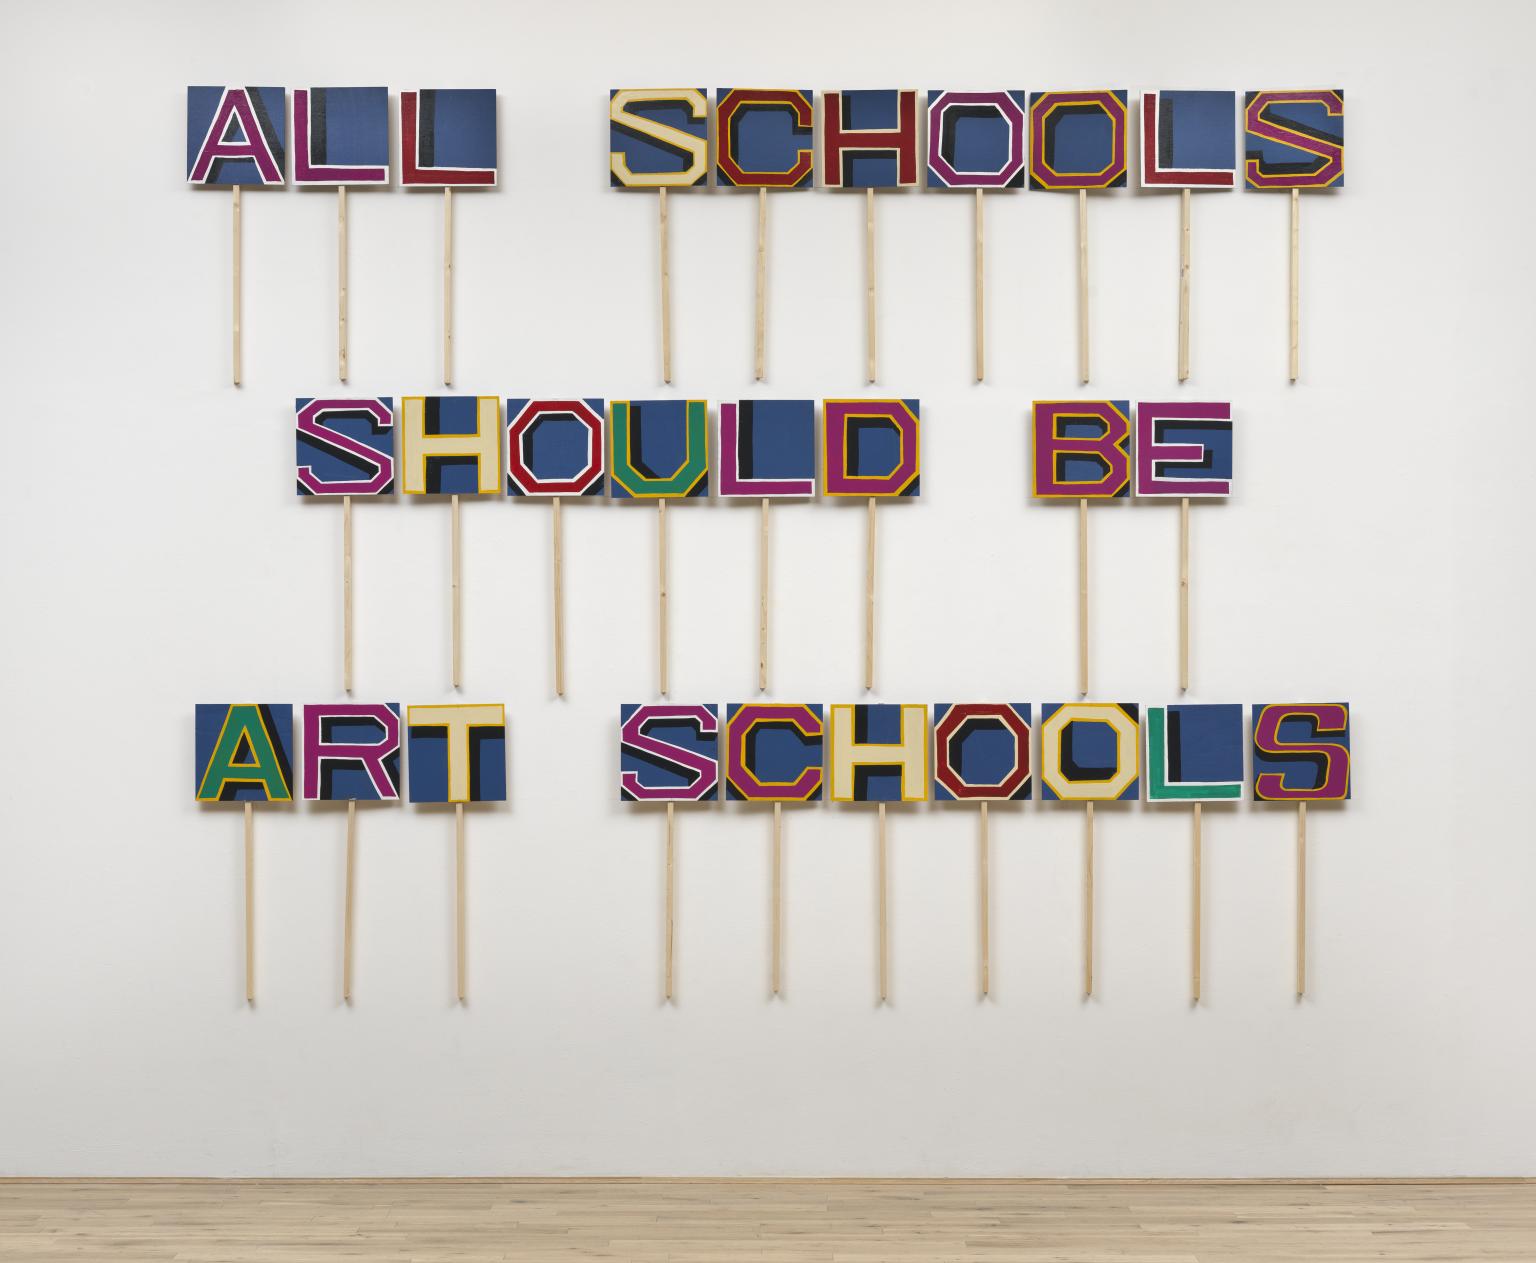 T14774: All Schools Should be Art Schools